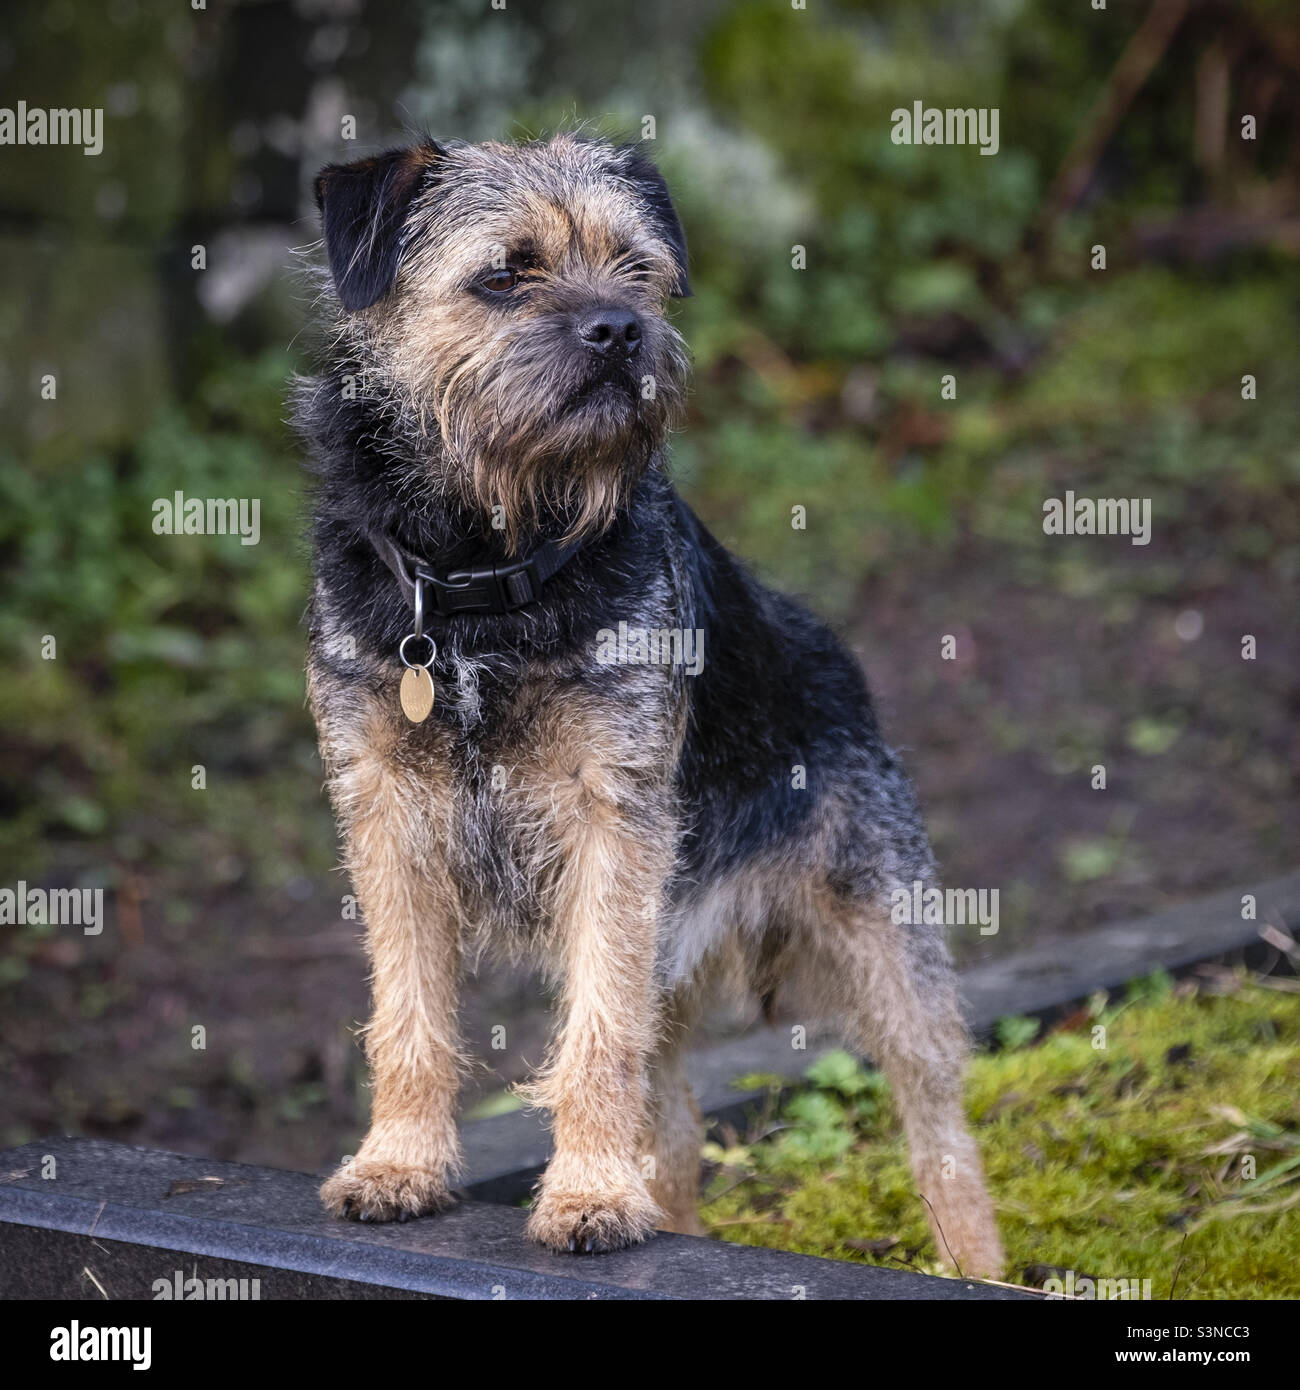 Border Terrier, Dog. Stock Photo